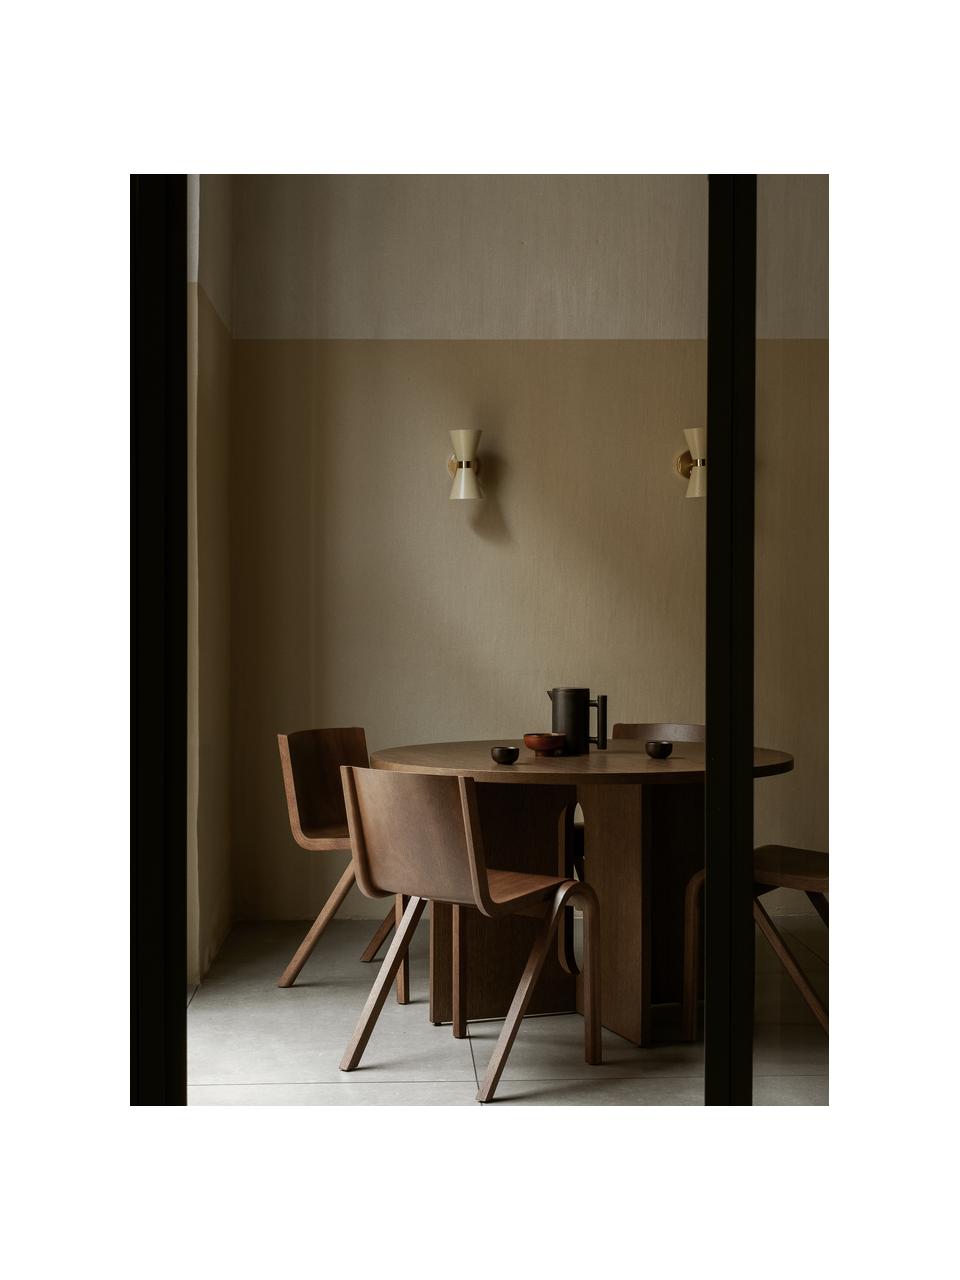 Krzesło z drewna dębowego Ready Dining, Stelaż: drewno dębowe lakierowane, Nogi: drewno dębowe lakierowane, Drewno dębowe lakierowane na ciemno, S 47 x G 50 cm